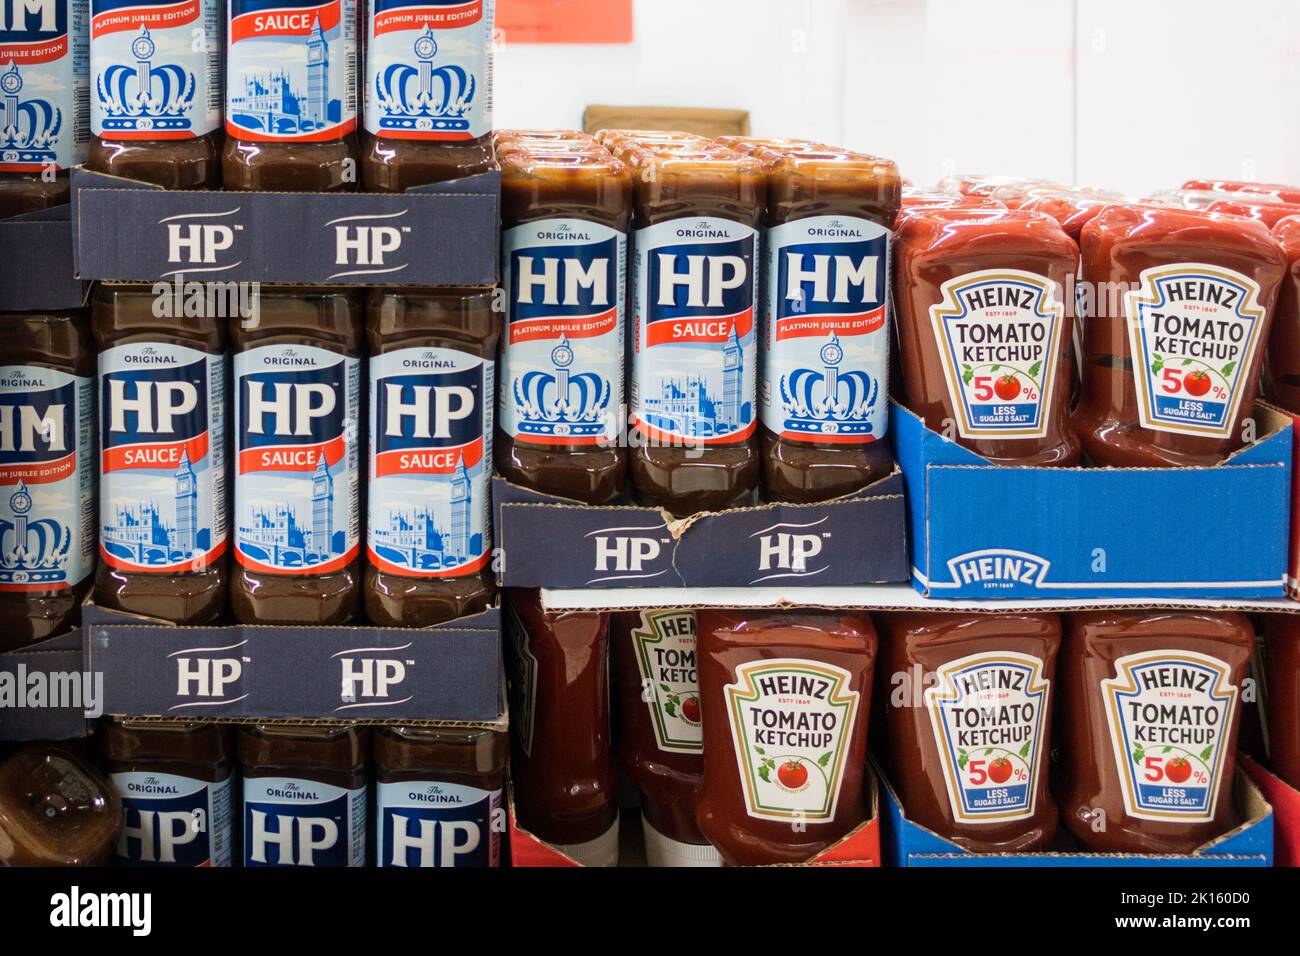 Salsa HP y ketchup de tomate Heinz en el suelo de la tienda Foto de stock